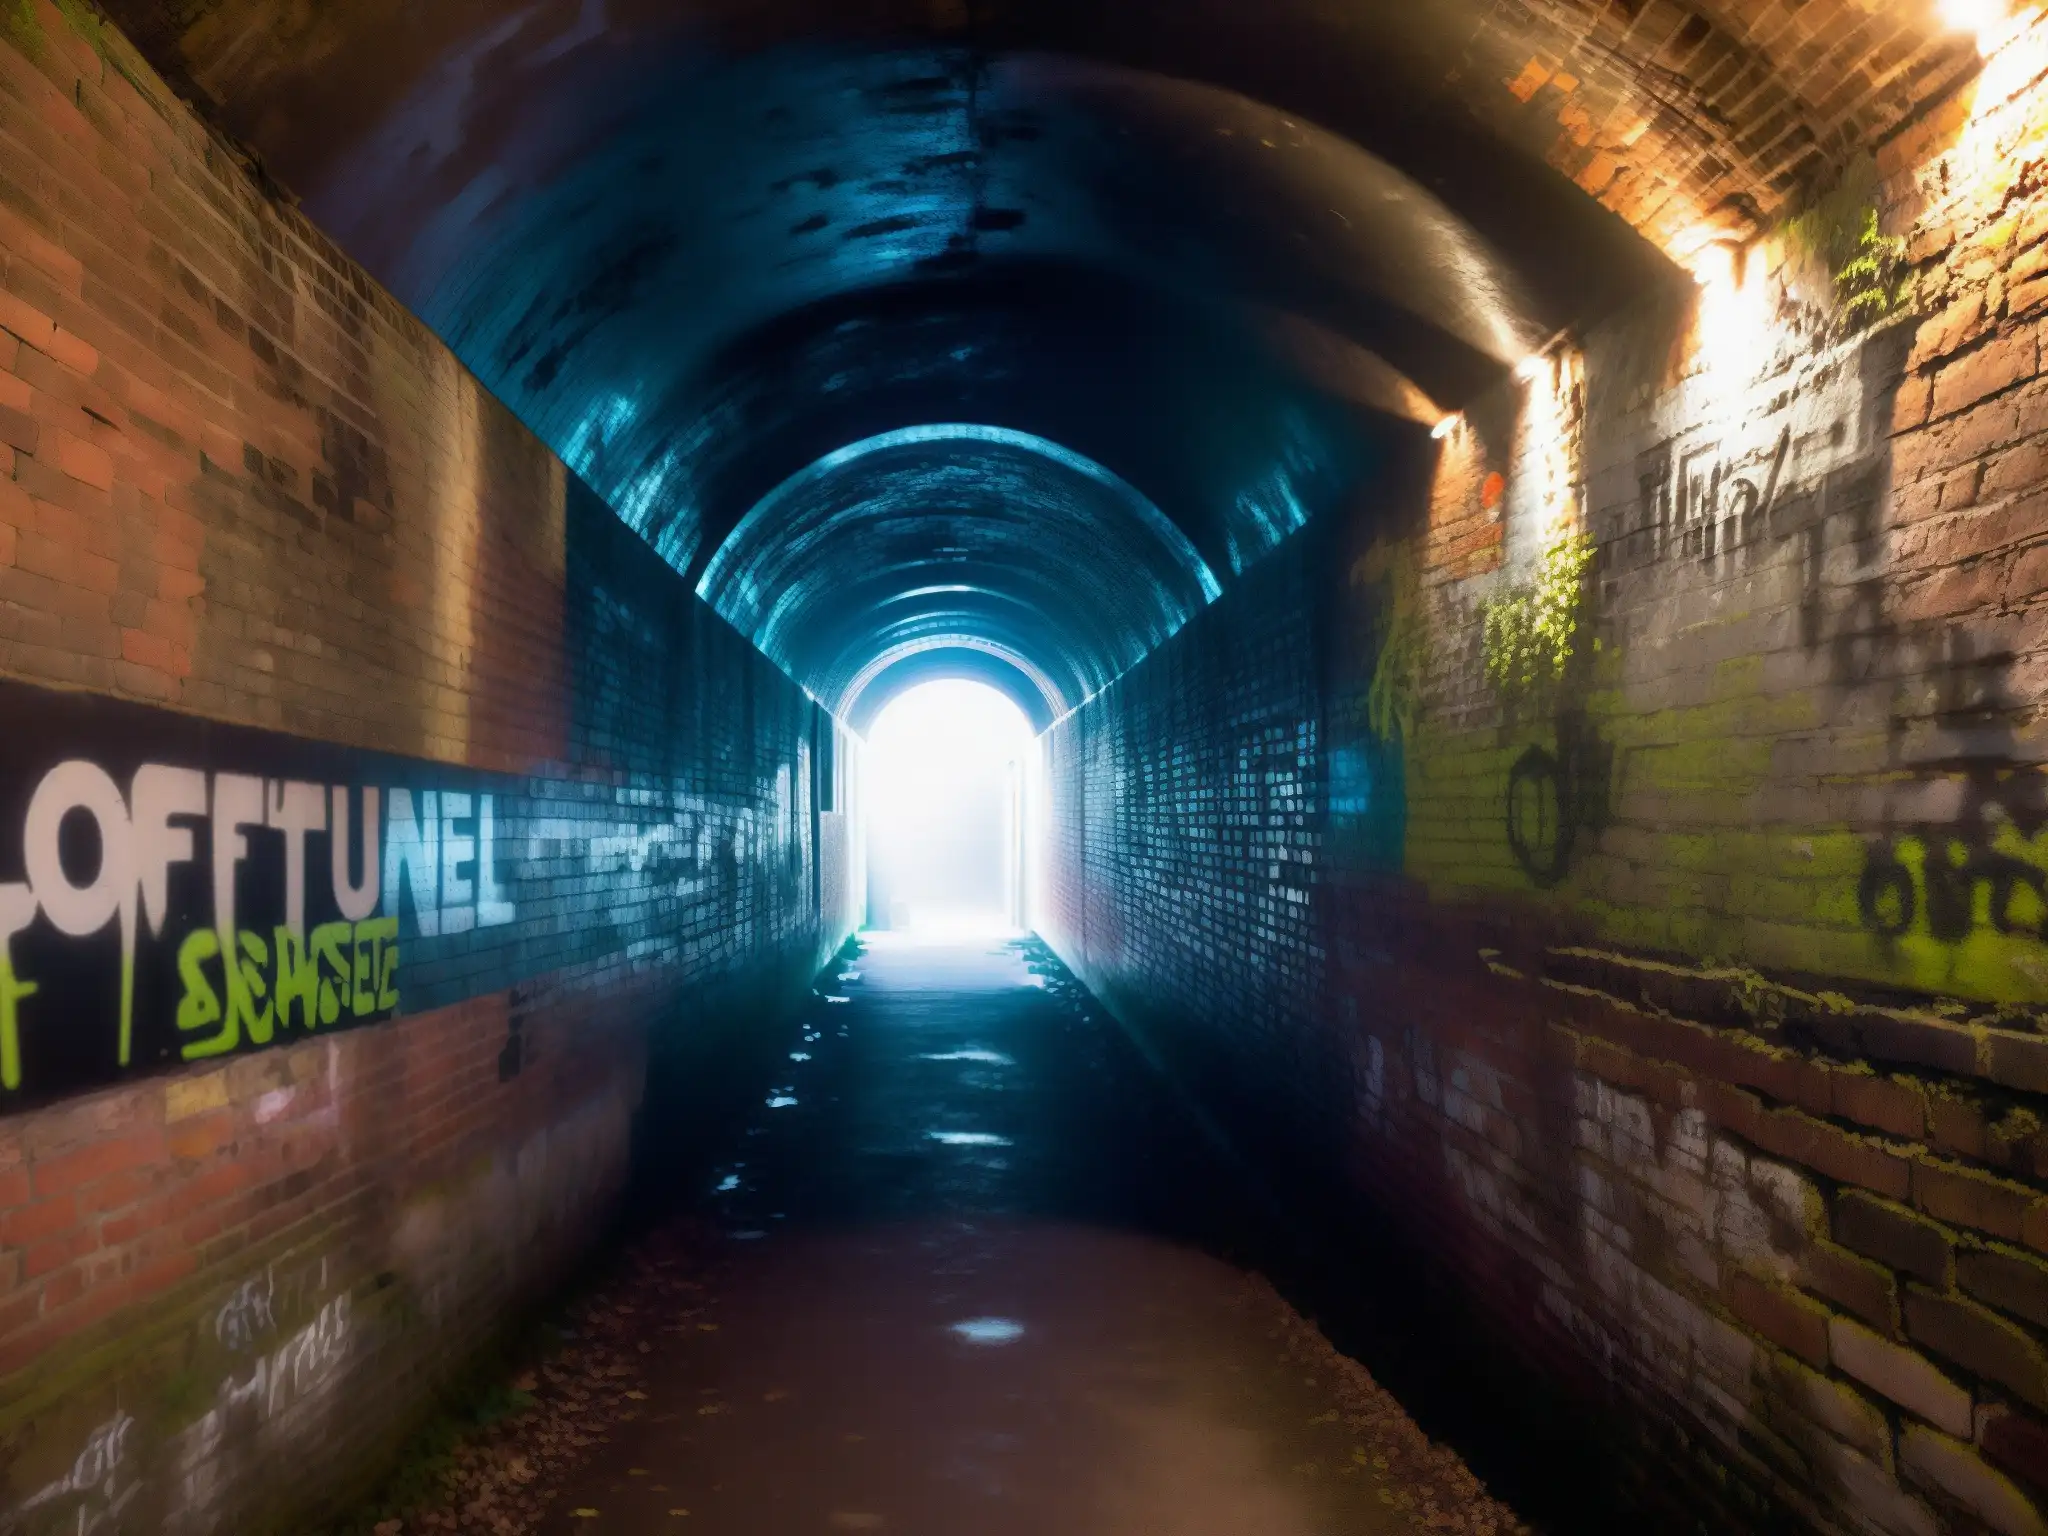 Un oscuro túnel estrecho con paredes de ladrillo cubiertas de grafiti